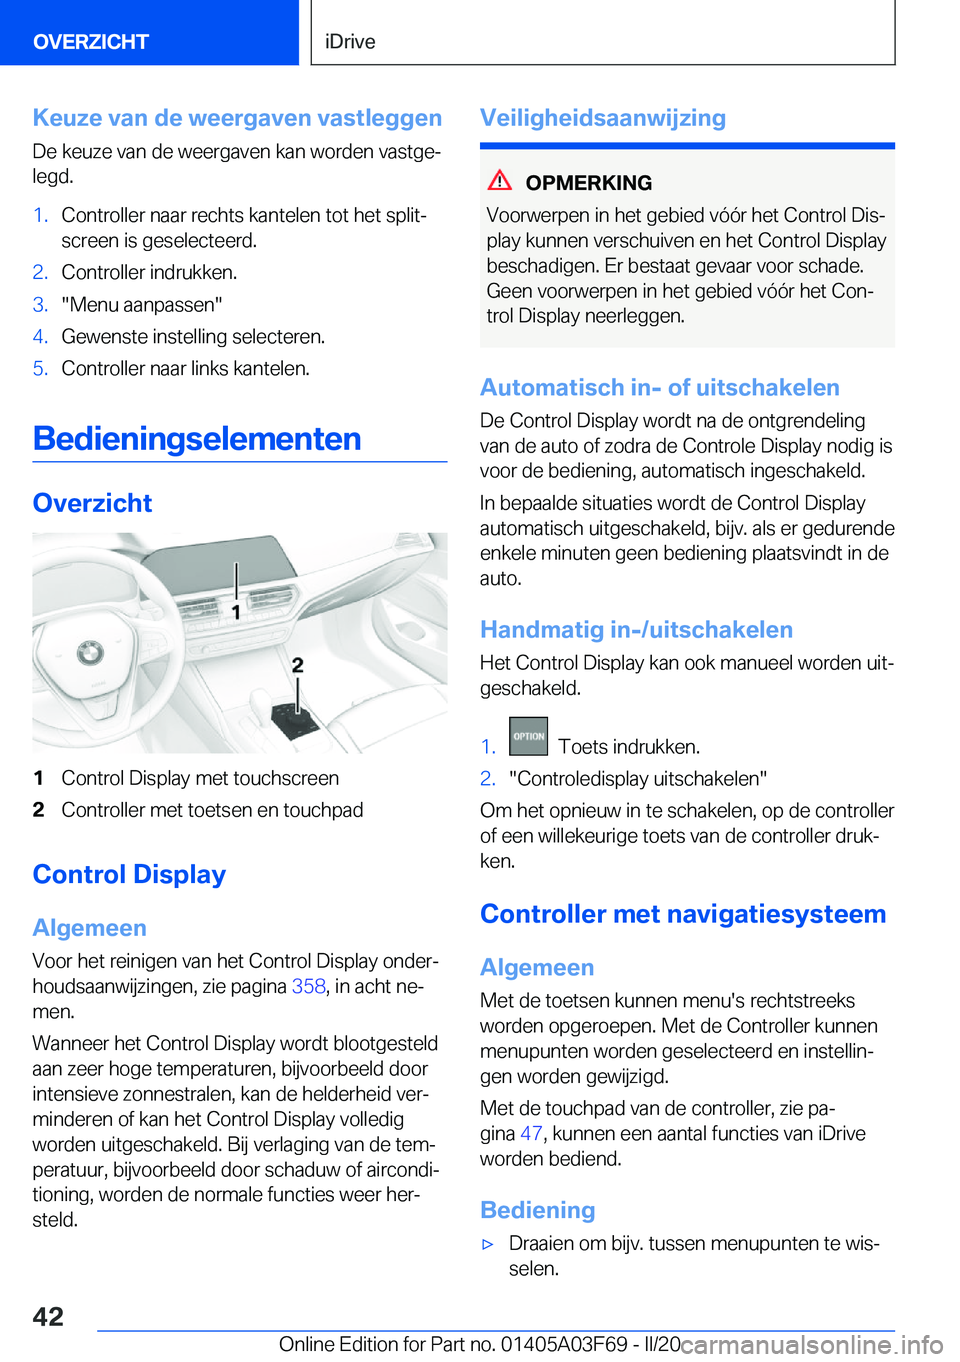 BMW 3 SERIES 2020  Instructieboekjes (in Dutch) �K�e�u�z�e��v�a�n��d�e��w�e�e�r�g�a�v�e�n��v�a�s�t�l�e�g�g�e�n�D�e��k�e�u�z�e��v�a�n��d�e��w�e�e�r�g�a�v�e�n��k�a�n��w�o�r�d�e�n��v�a�s�t�g�ej�l�e�g�d�.�1�.�C�o�n�t�r�o�l�l�e�r��n�a�a�r�